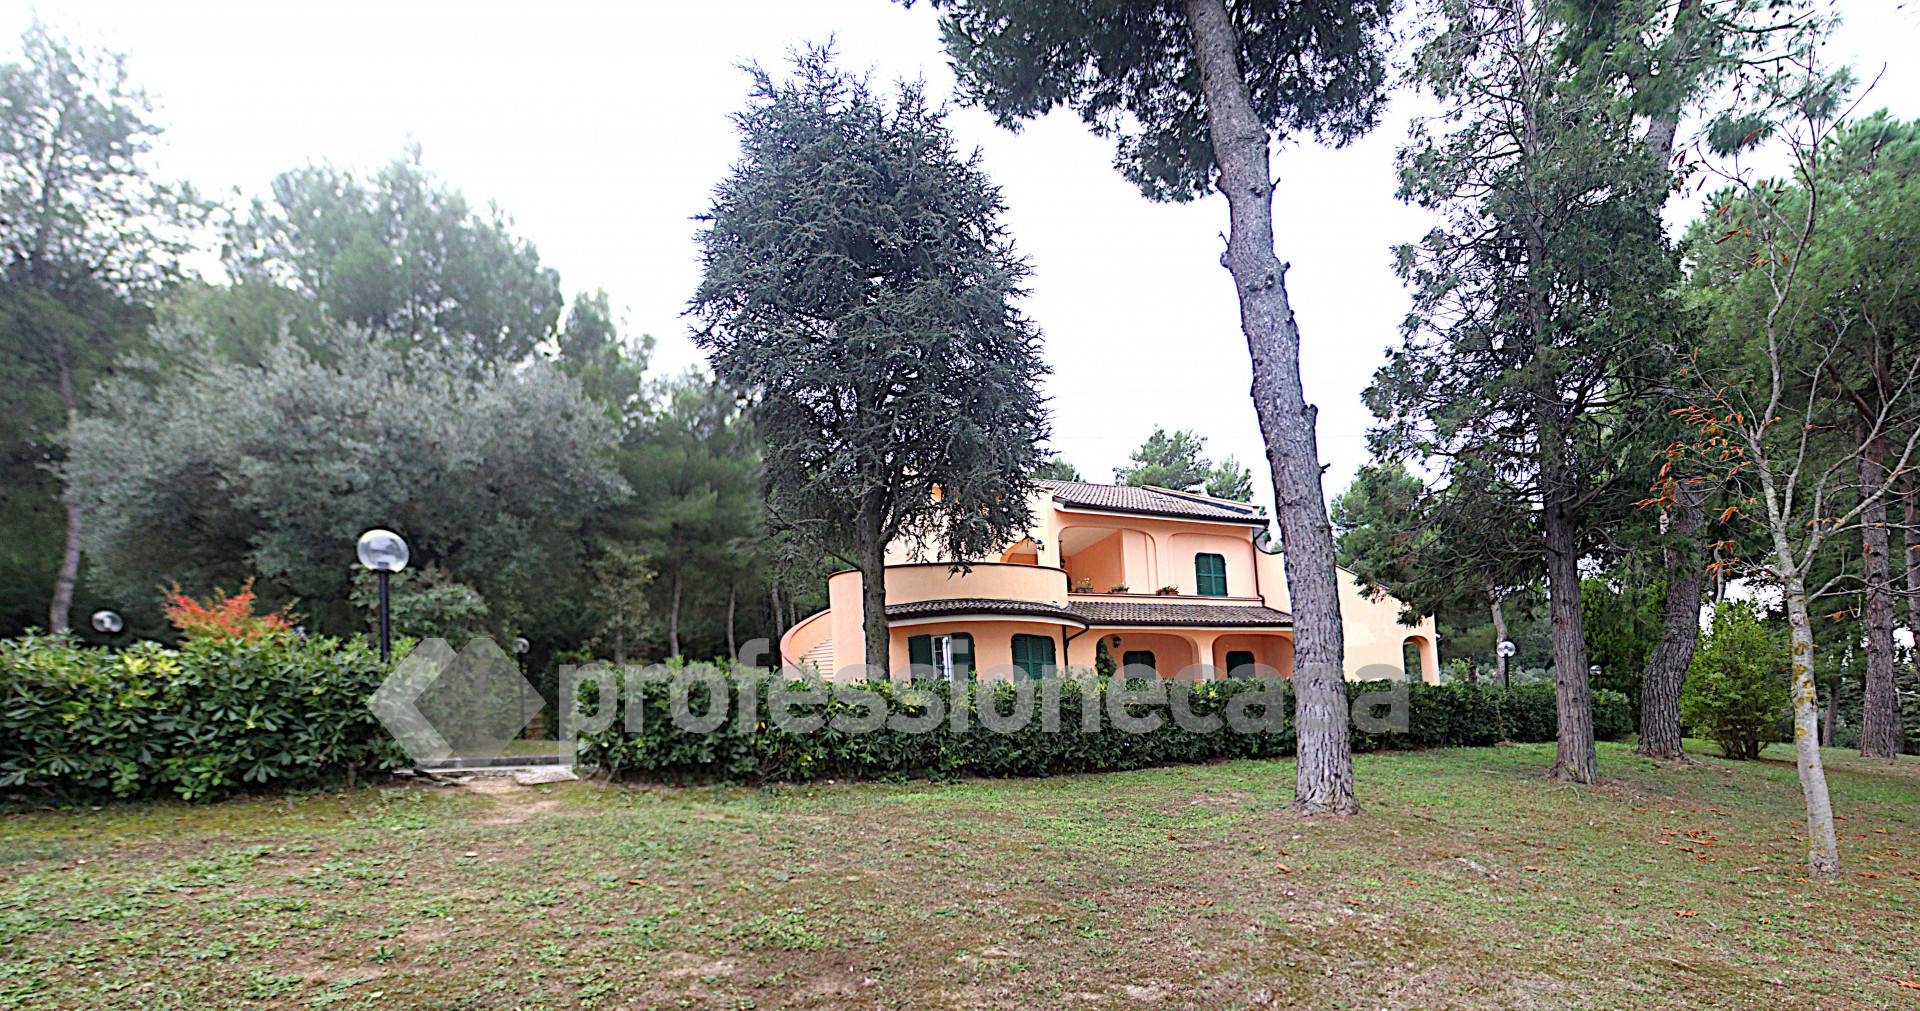 Foto - Villa In Vendita Civitanova Marche (mc)